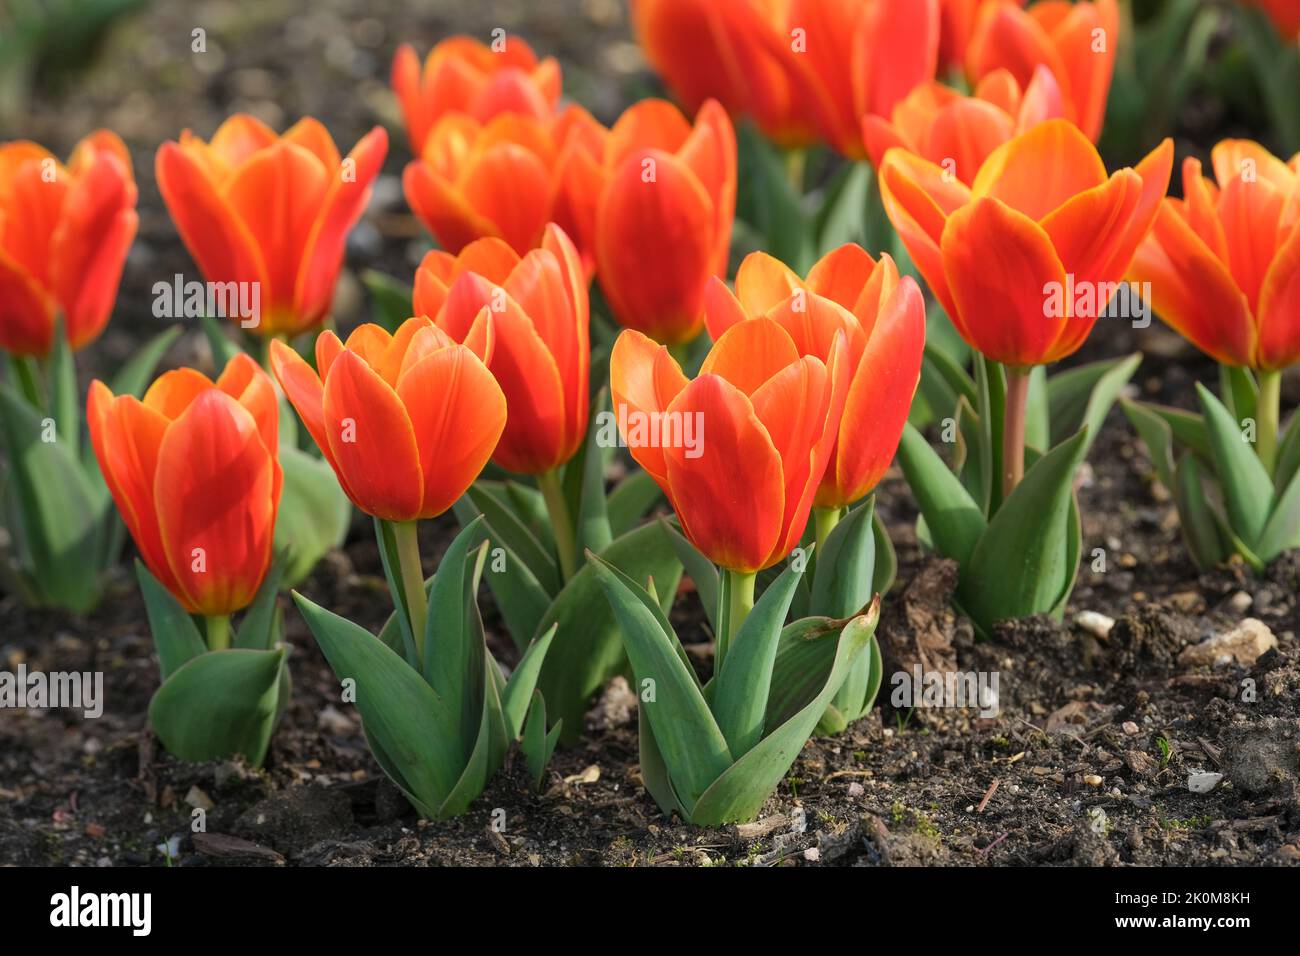 Tulipa 'Canción de Amor', Tulipa 'Canción de Amor', Tulipa Kaufmanniana 'Canción de Amor'. Tulipán de nenúfar con hojas a rayas y flores de color naranja brillante Foto de stock